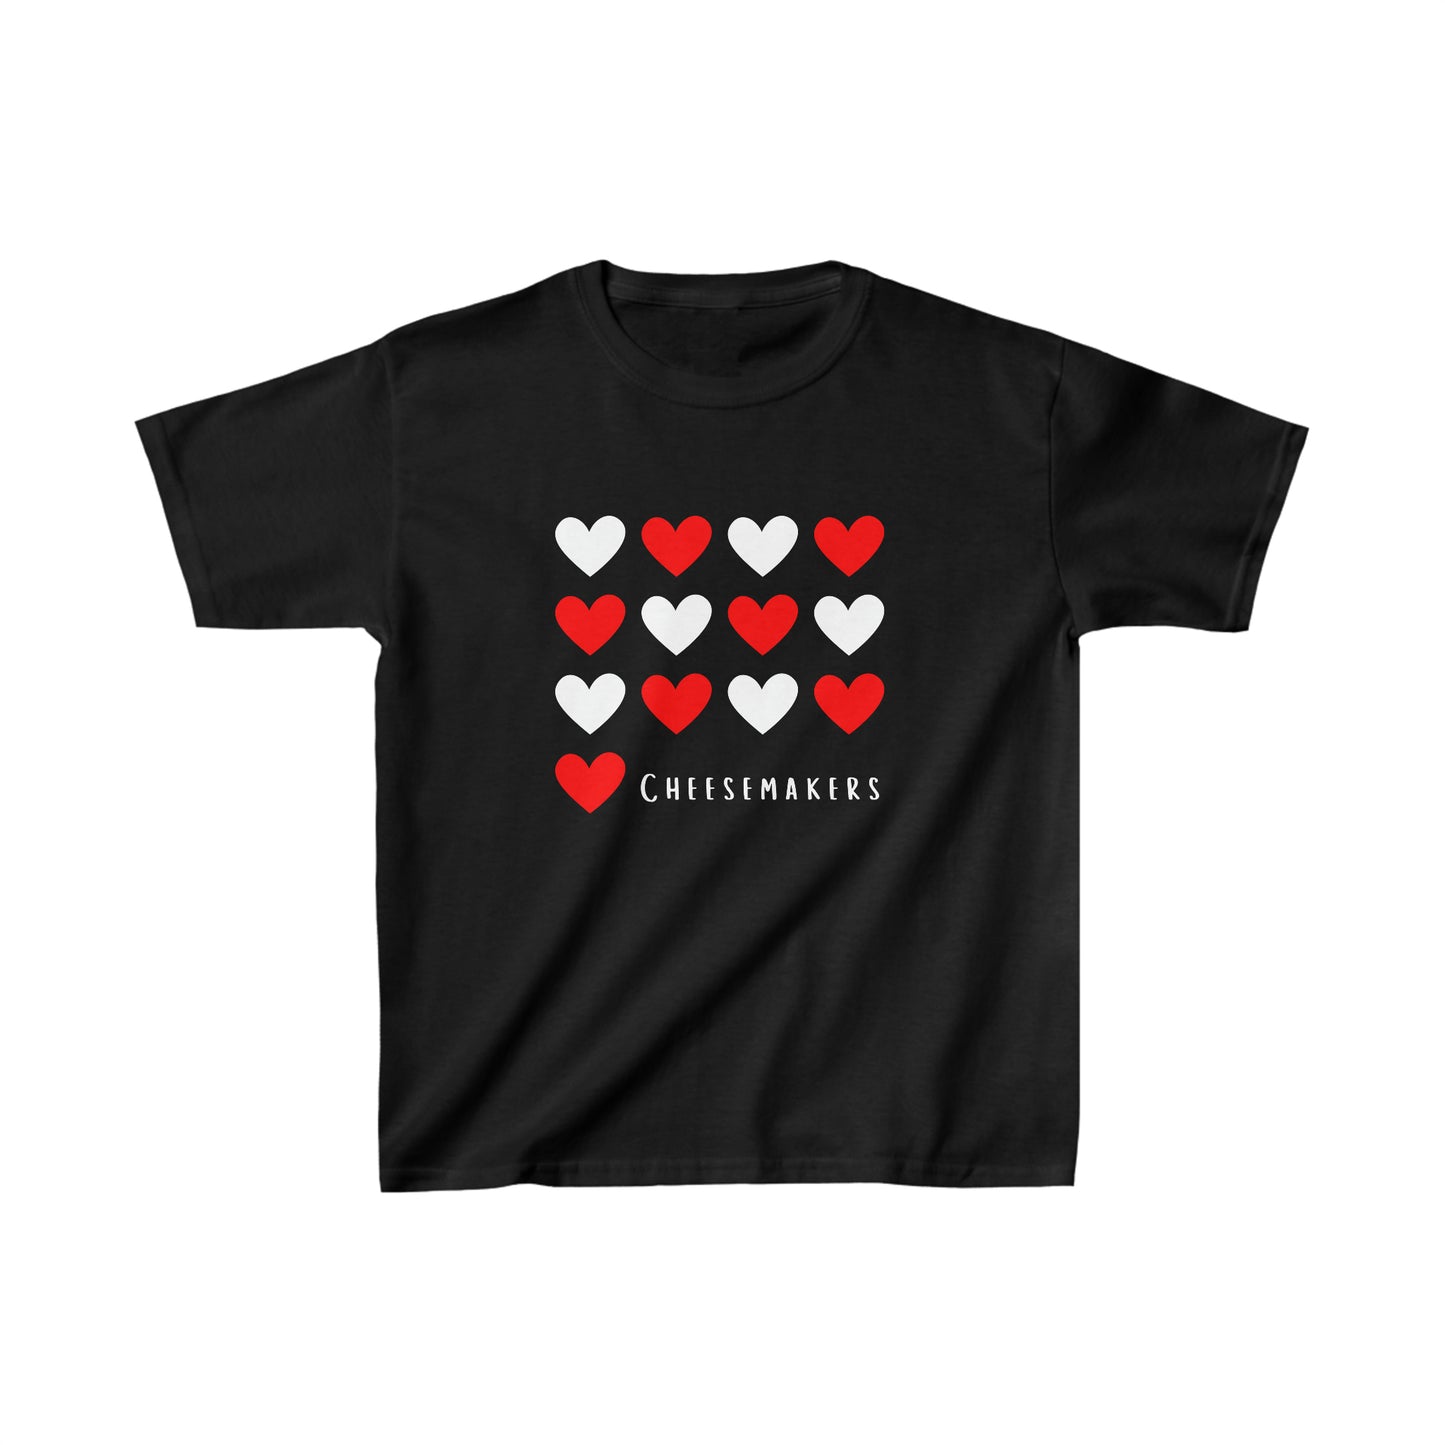 I HEART Cheesemakers- Kids T-Shirt